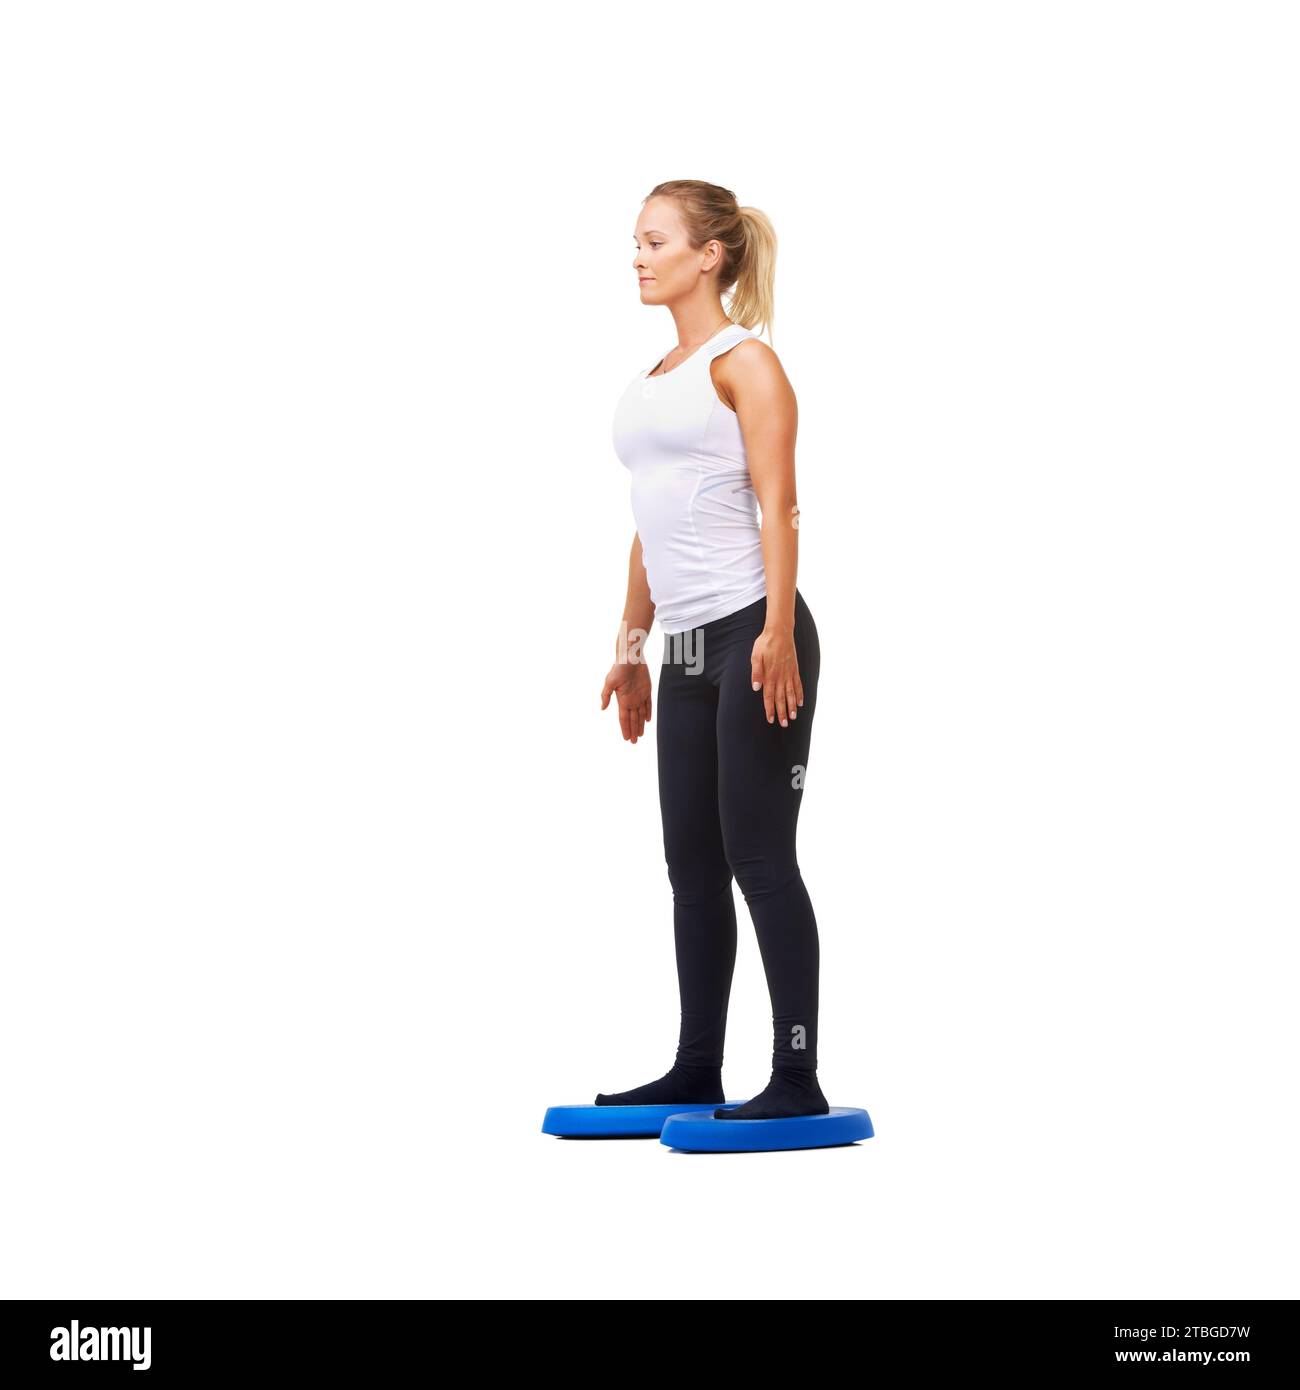 Balance, Bewegung und Training mit Frau auf Diskette im Studio für Workout, Achtsamkeit oder Gesundheit. Wellness, Herausforderung und Fitness mit Person auf weiß Stockfoto